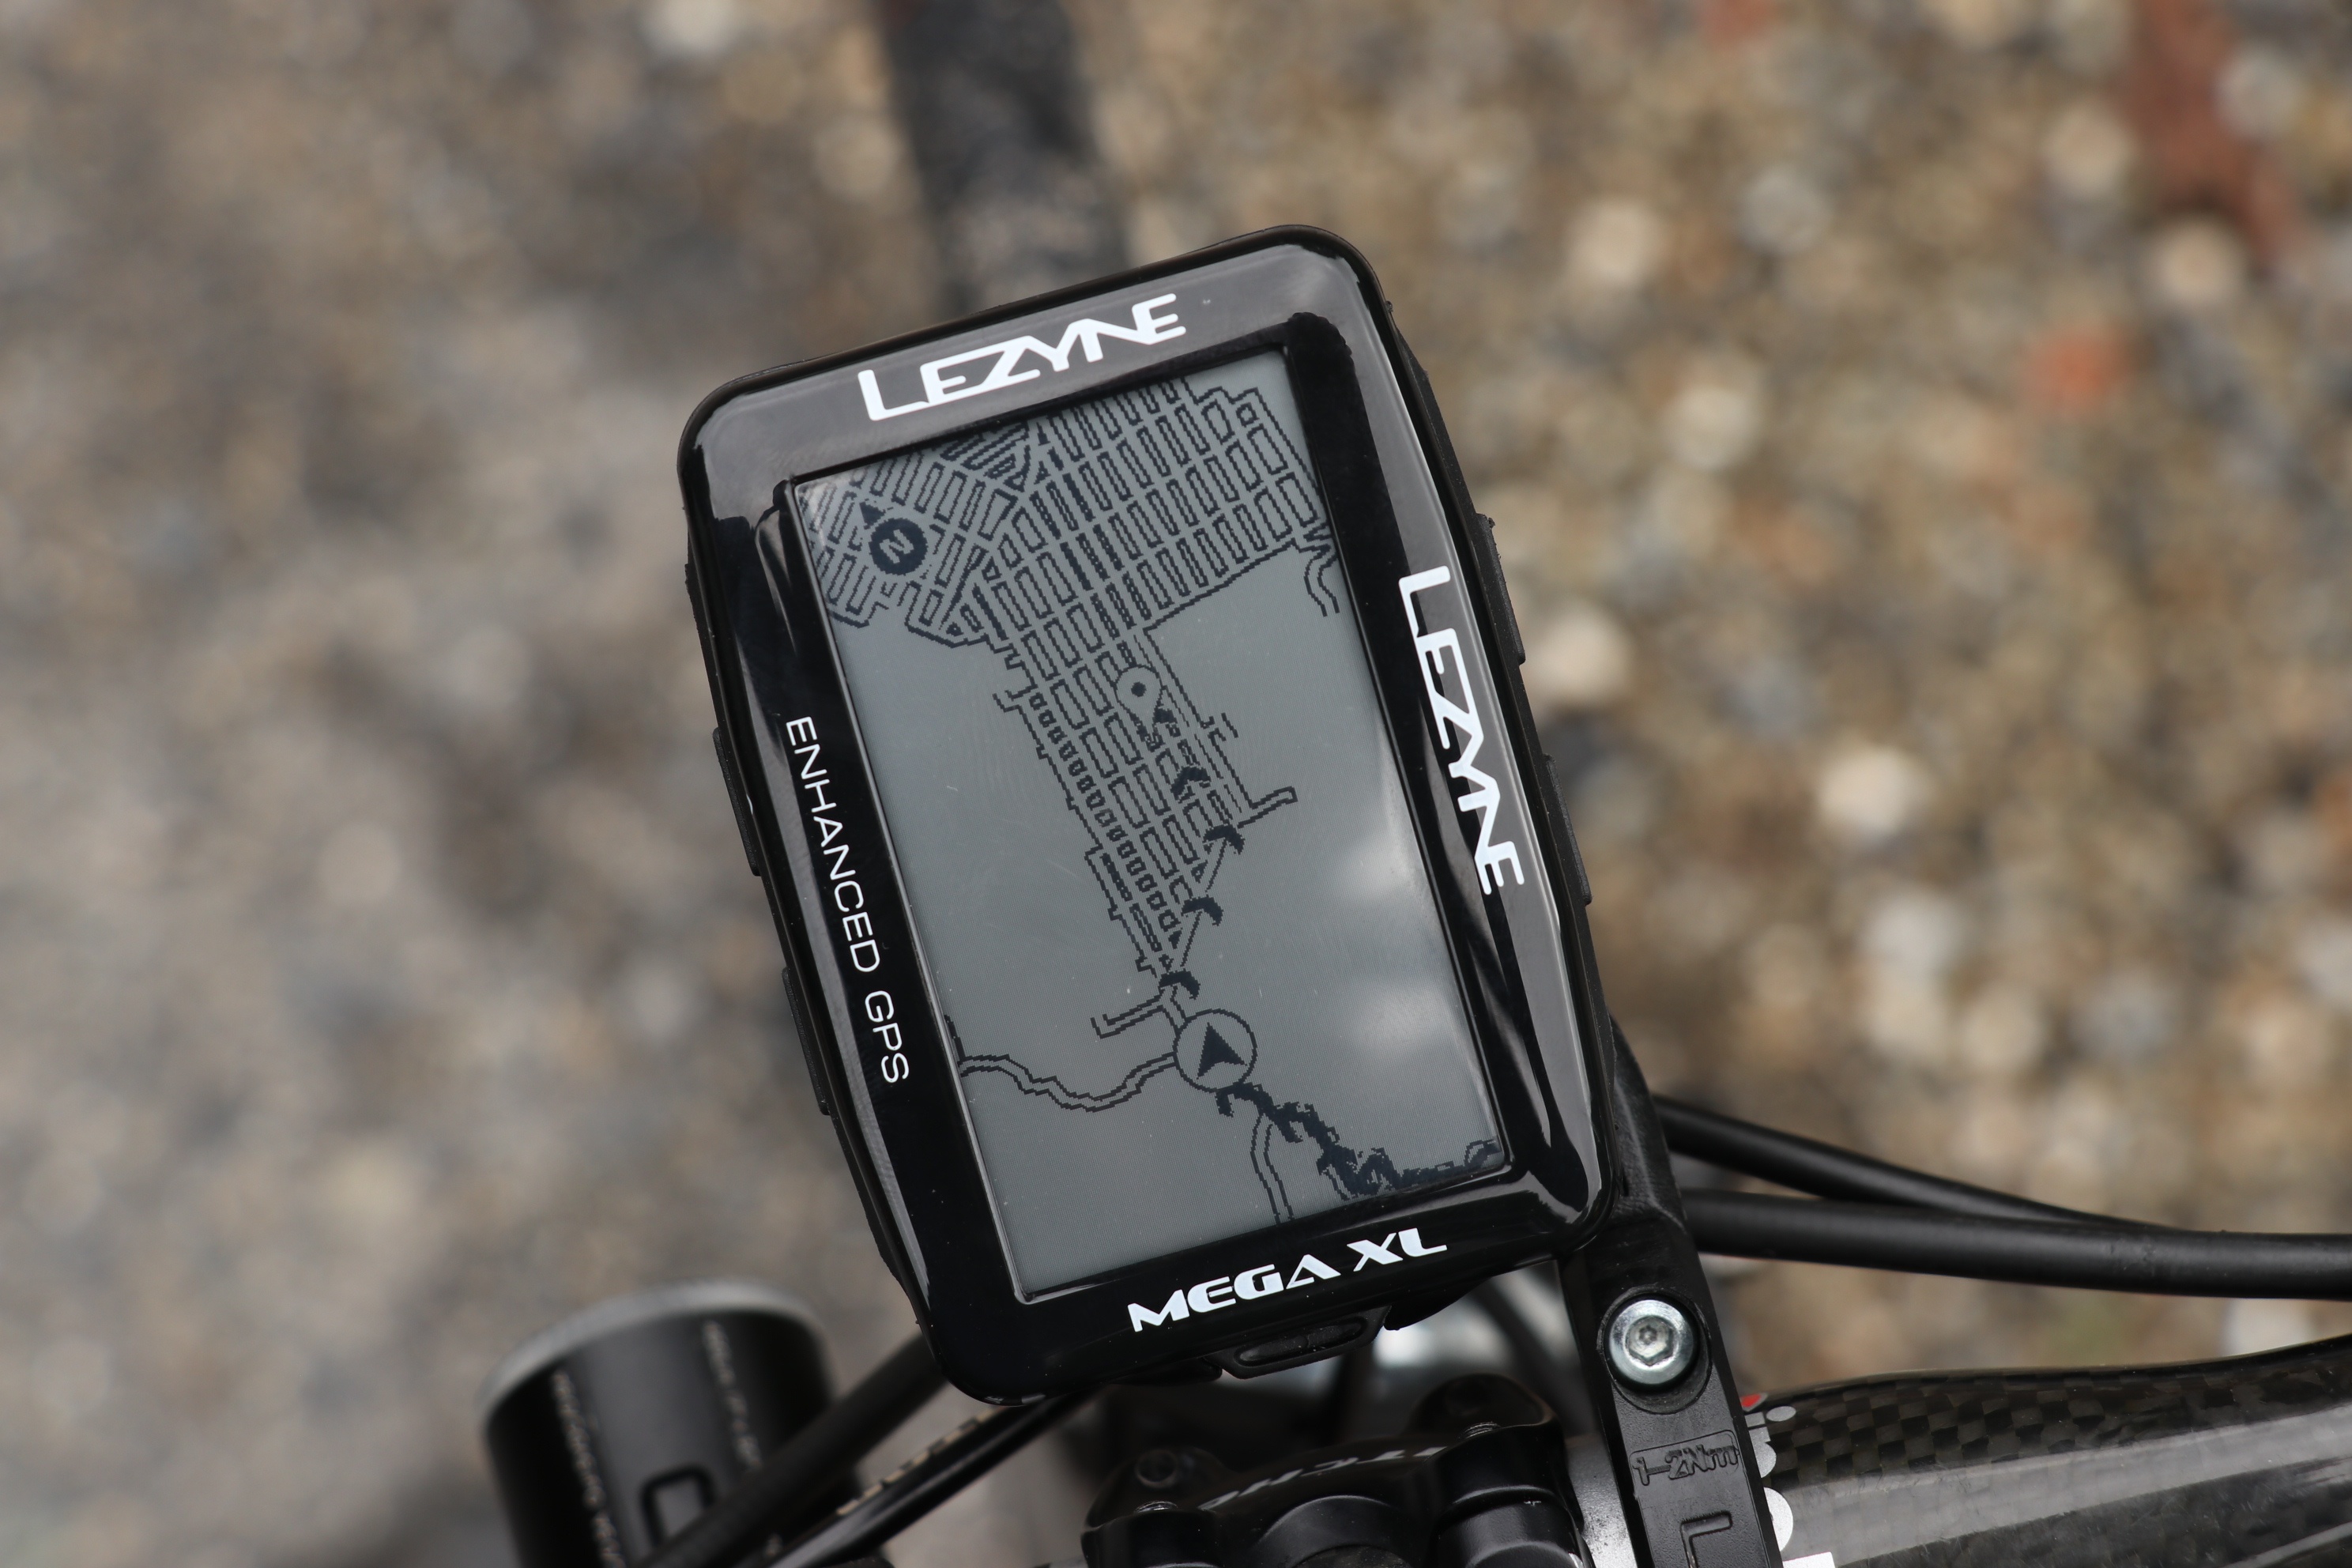 【在庫SALE / セール】【LEZYNE / レザイン】 MEGA XL GPS （GPS ナビゲーションデバイス) -  中古スポーツ車・中古自転車・新車 京都の自転車販売 オンラインショッピング| サイクルショップエイリン